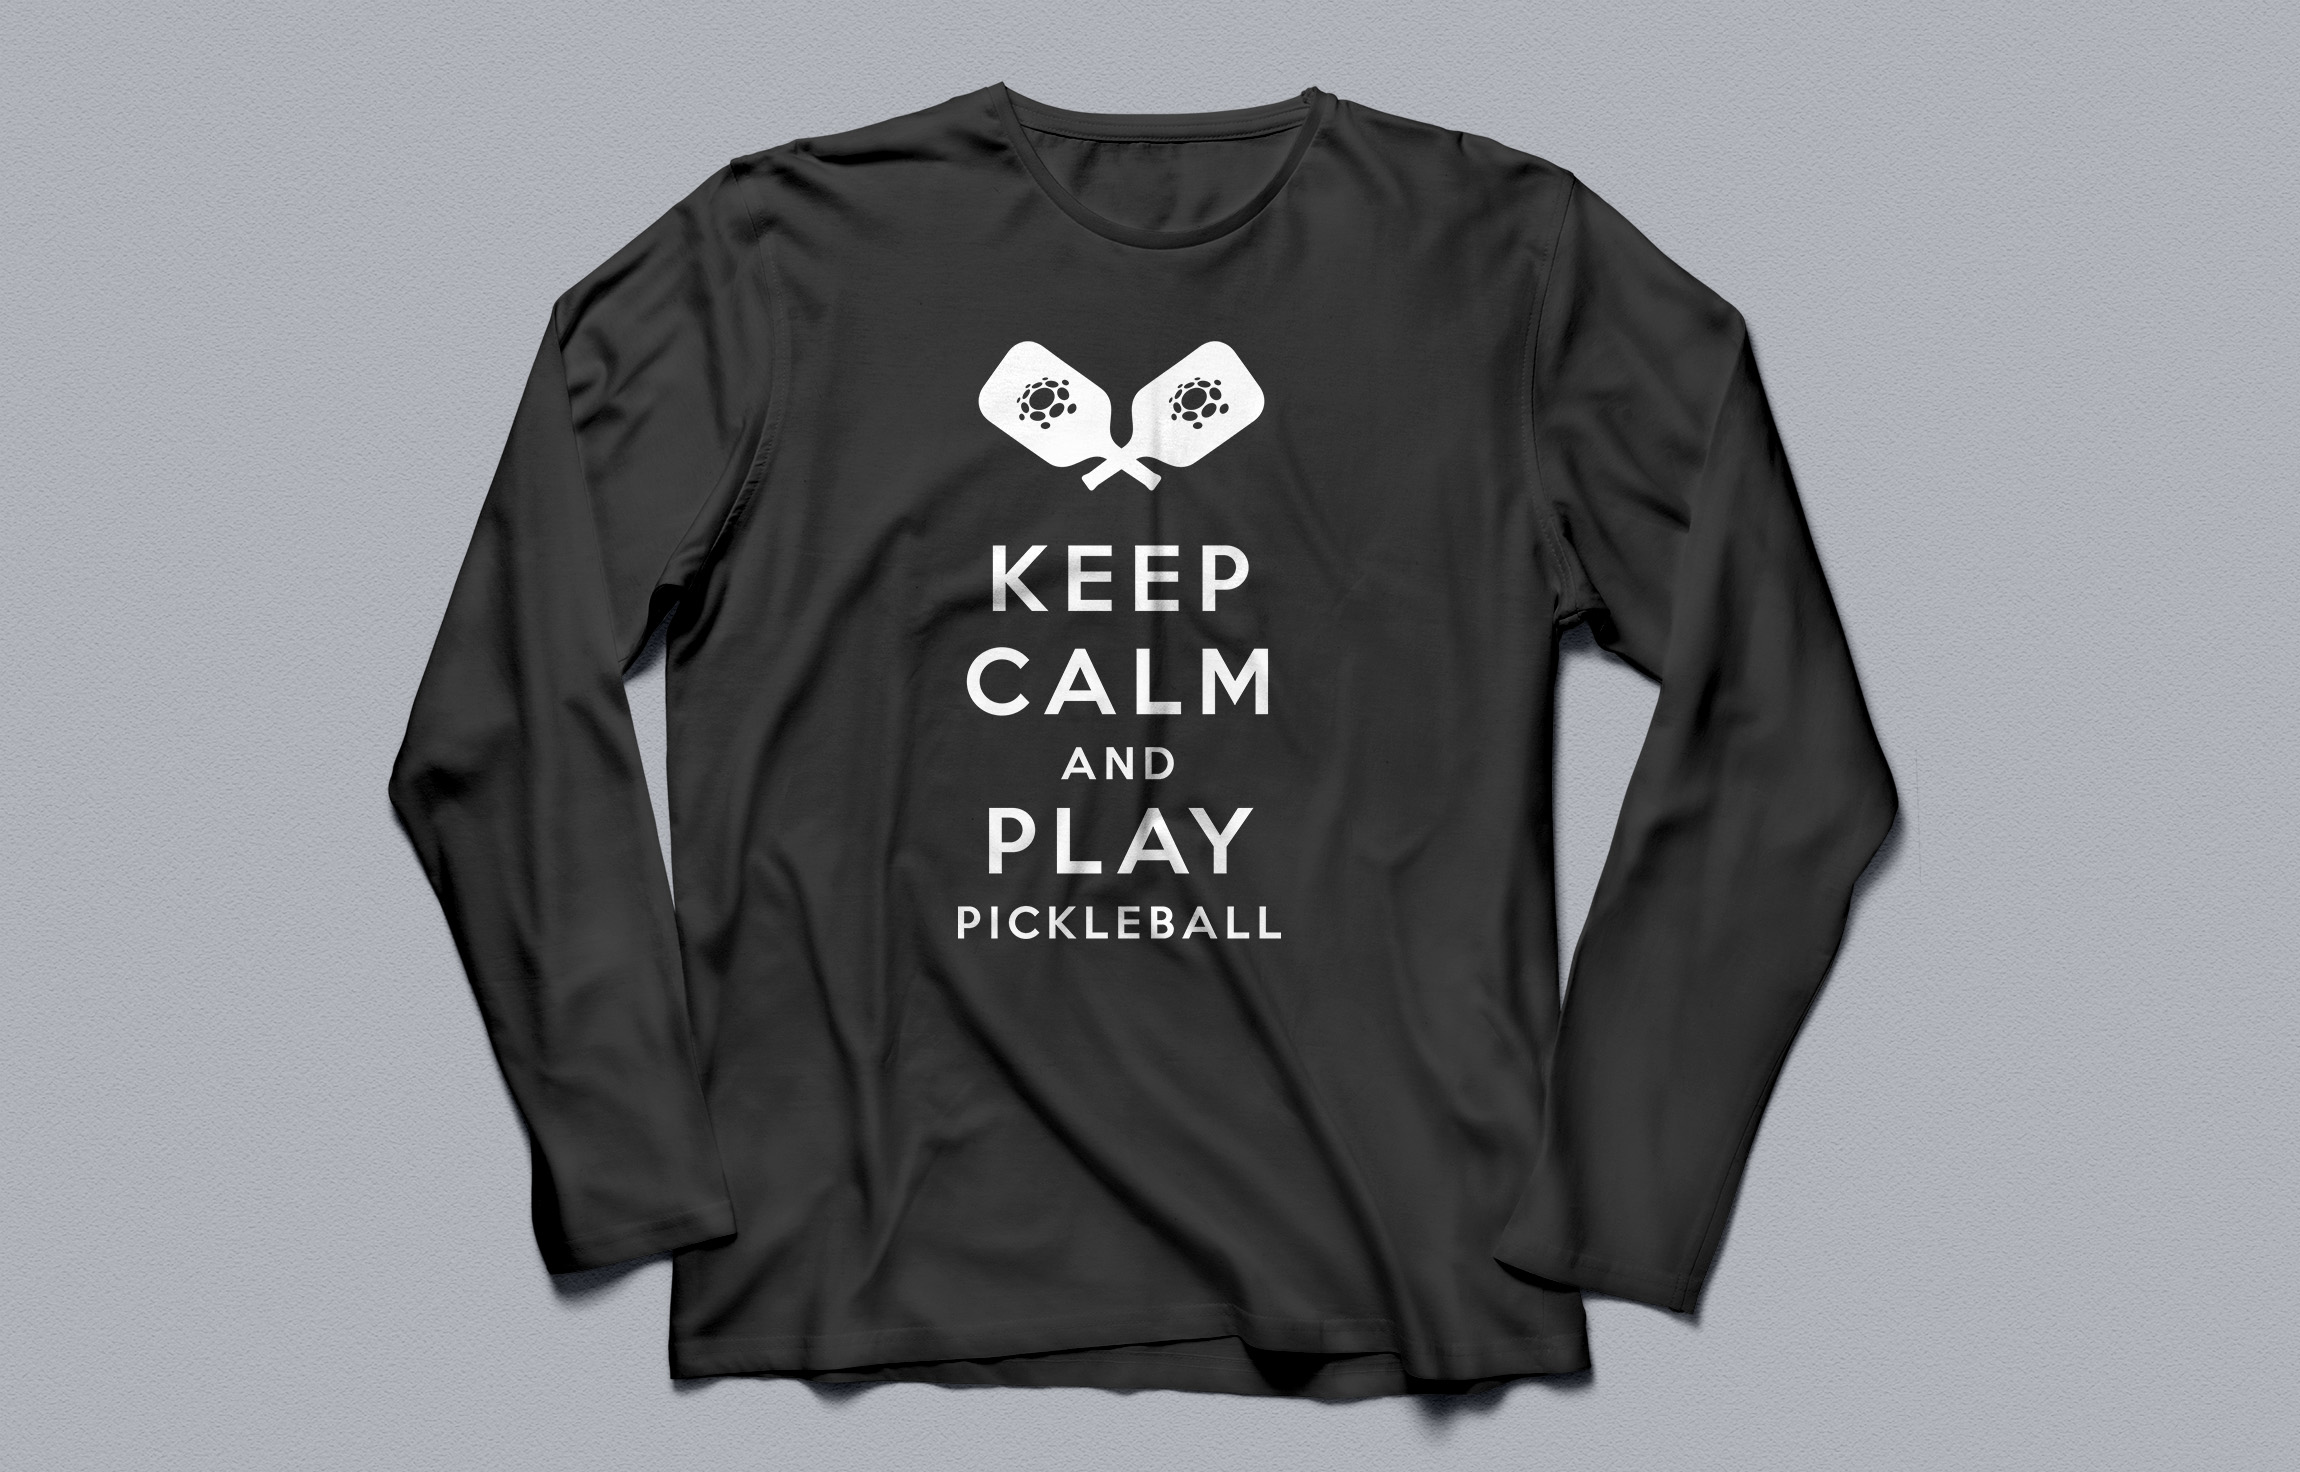 Steve Deakin Pickleball - T-Shirt Design